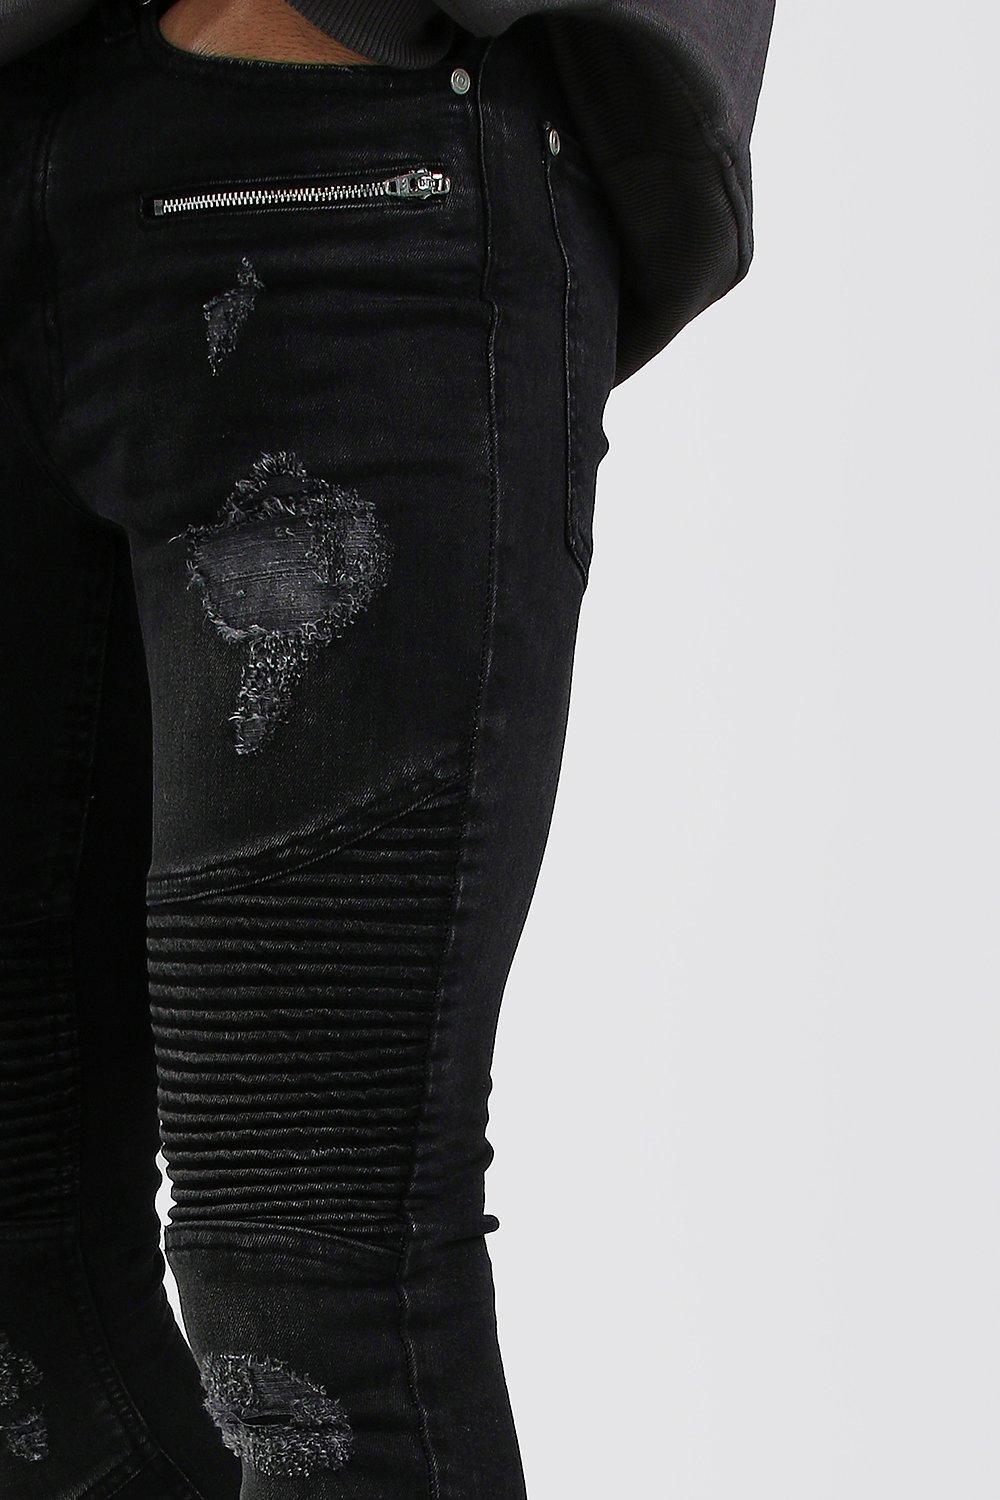 black skinny moto jeans